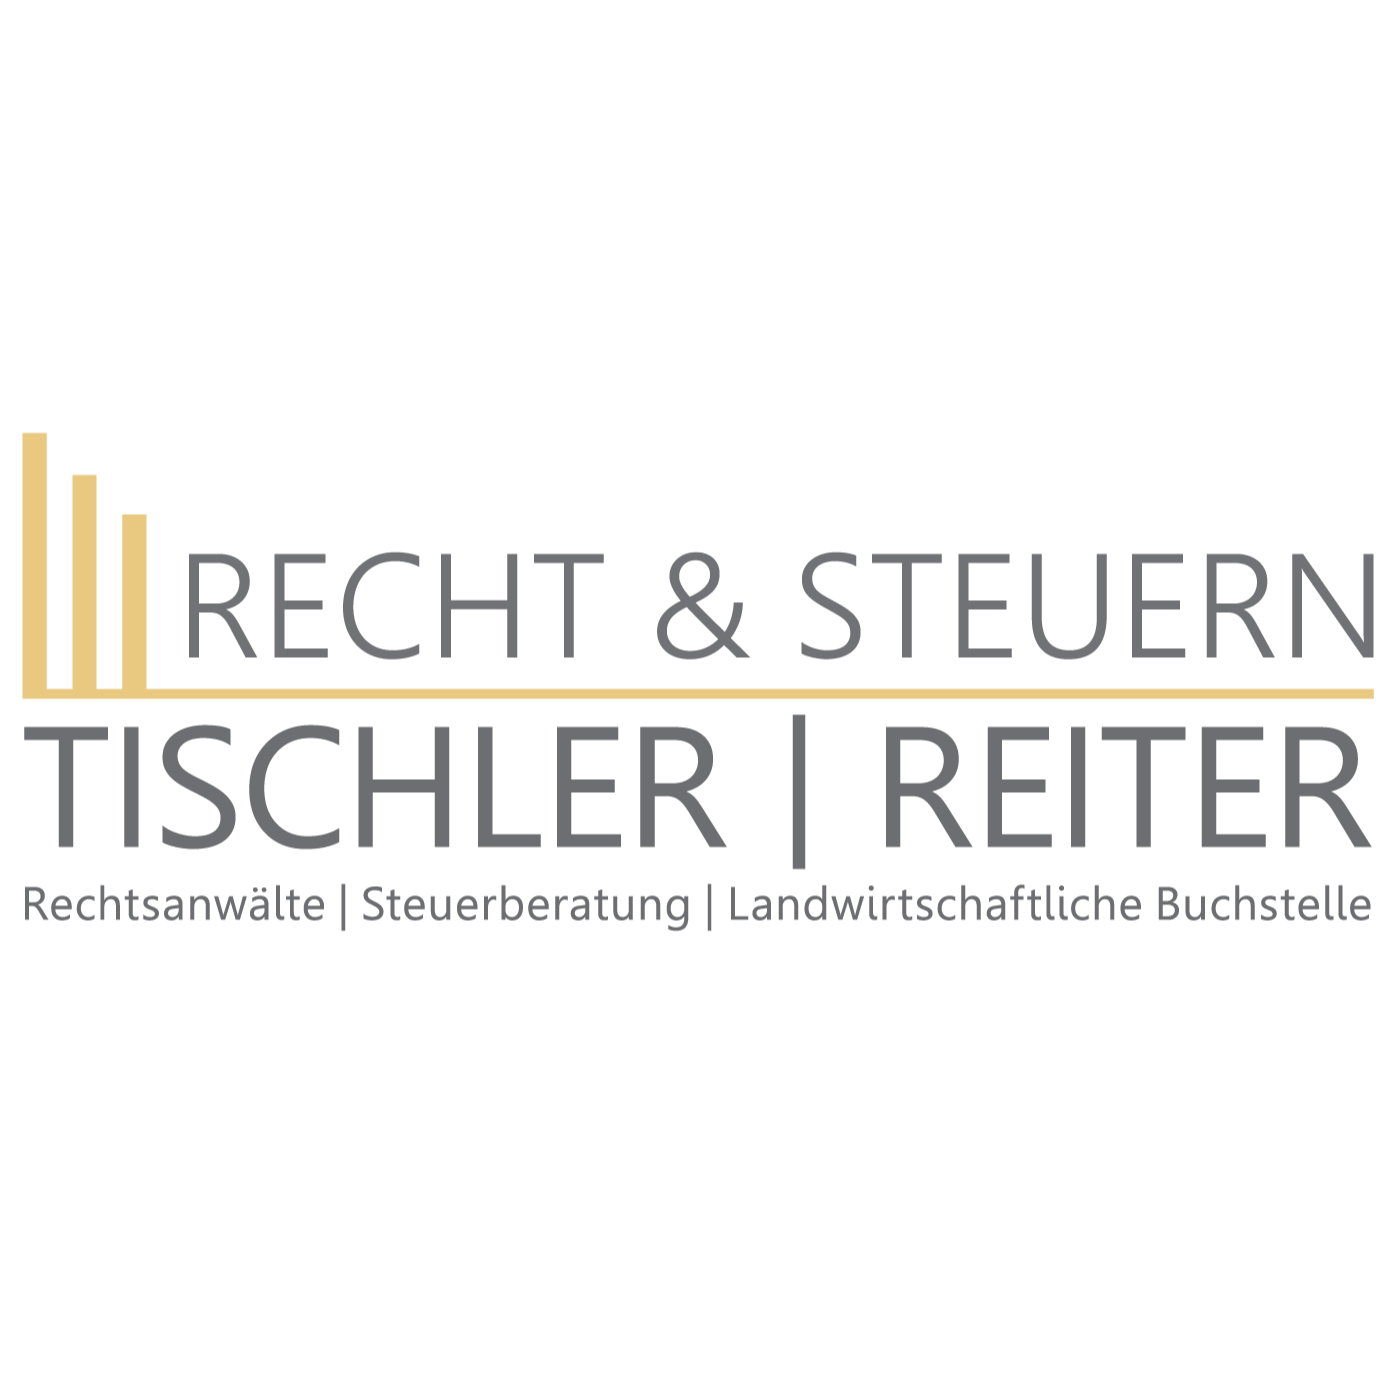 Recht & Steuern Tischler - Reiter in Pfarrkirchen in Niederbayern - Logo